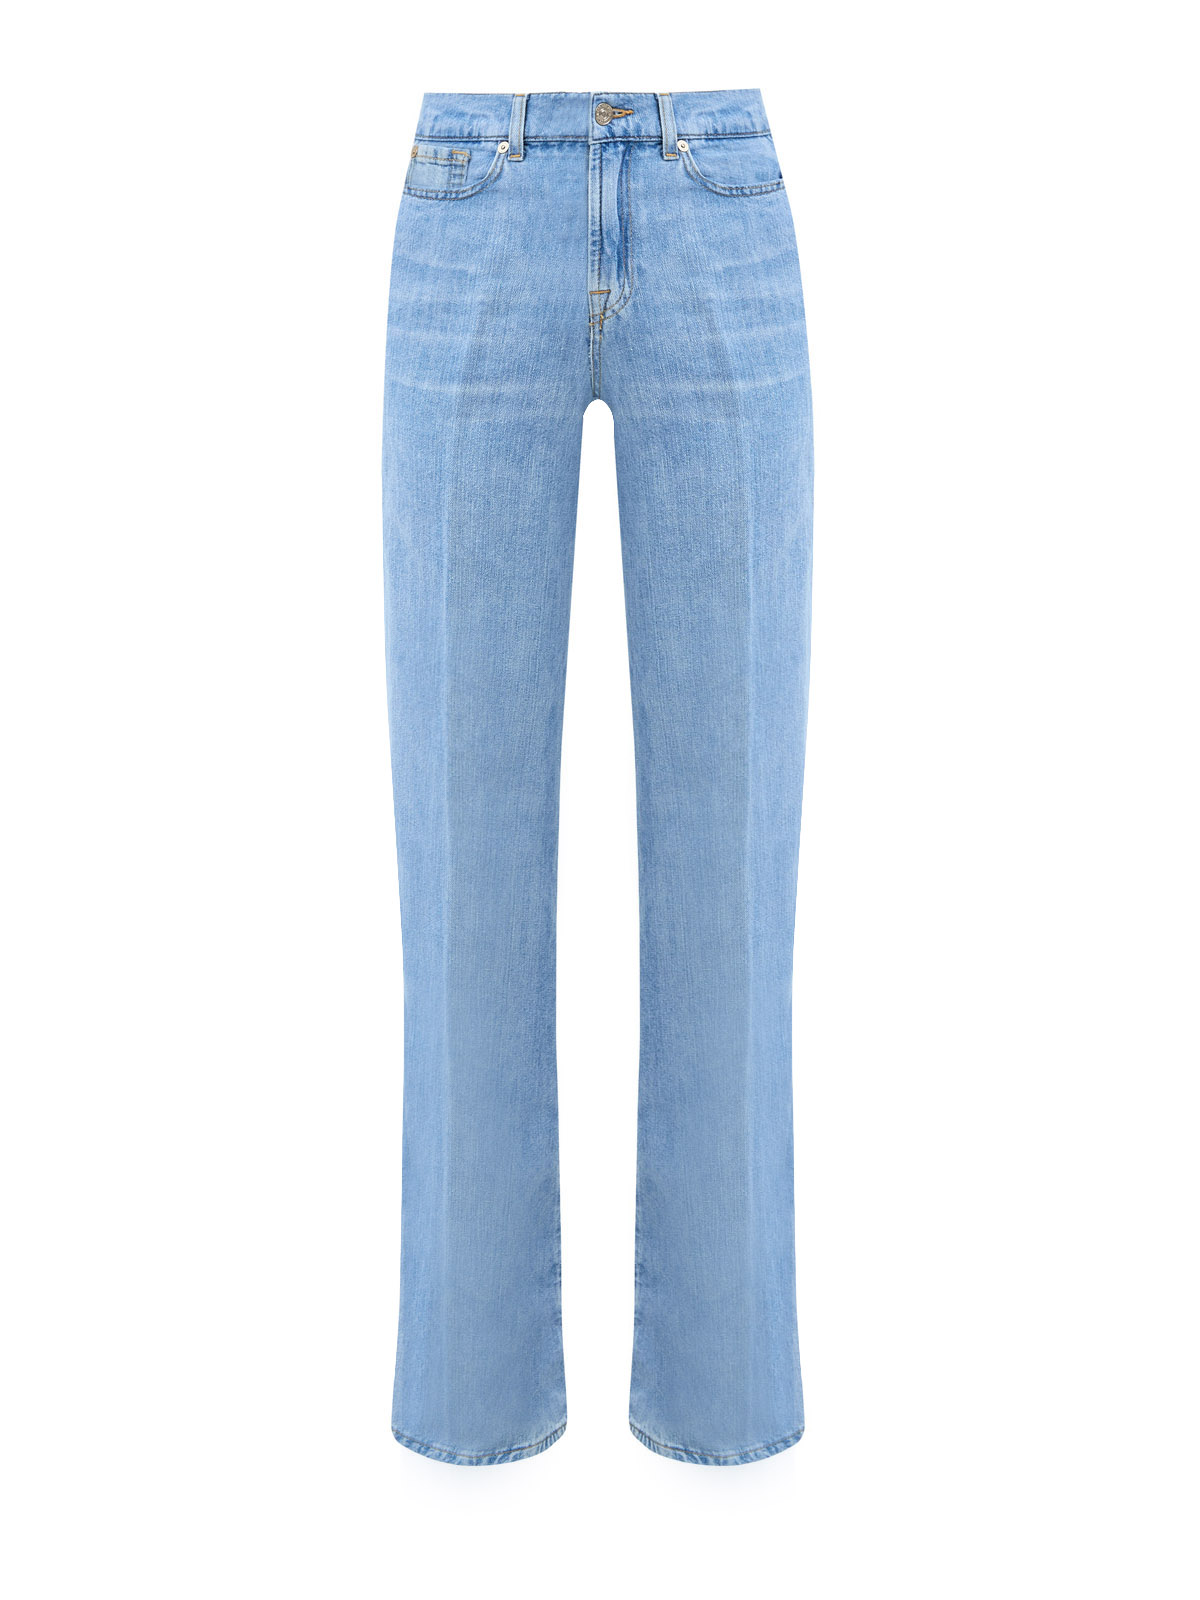 

Расклешенные джинсы Lotta в стиле 70-х из выбеленного денима, Голубой, Расклешенные джинсы Lotta в стиле 70-х из выбеленного денима